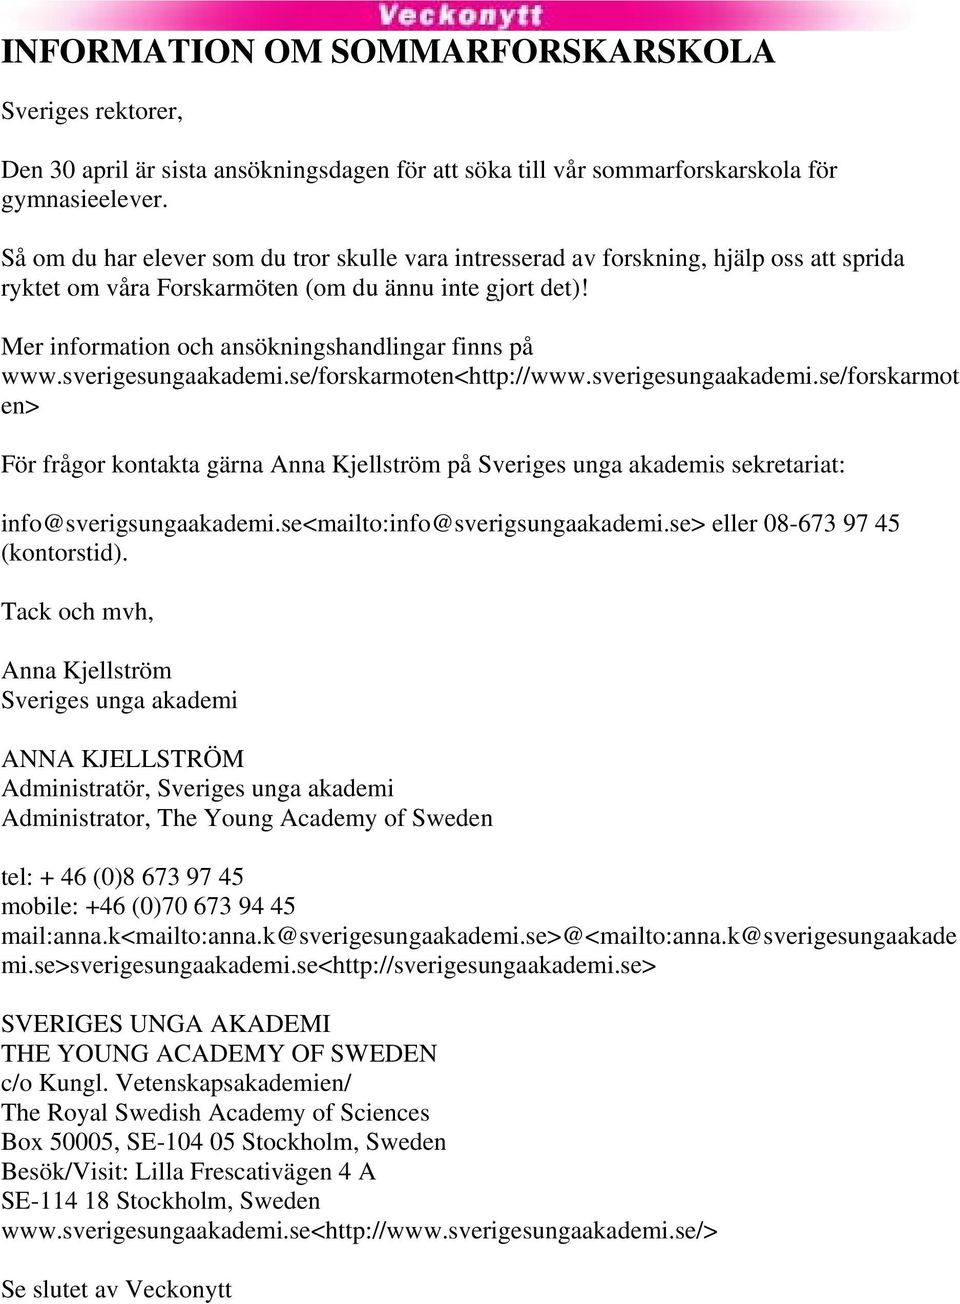 Mer information och ansökningshandlingar finns på www.sverigesungaakademi.se/forskarmoten<http://www.sverigesungaakademi.se/forskarmot en> För frågor kontakta gärna Anna Kjellström på Sveriges unga akademis sekretariat: info@sverigsungaakademi.